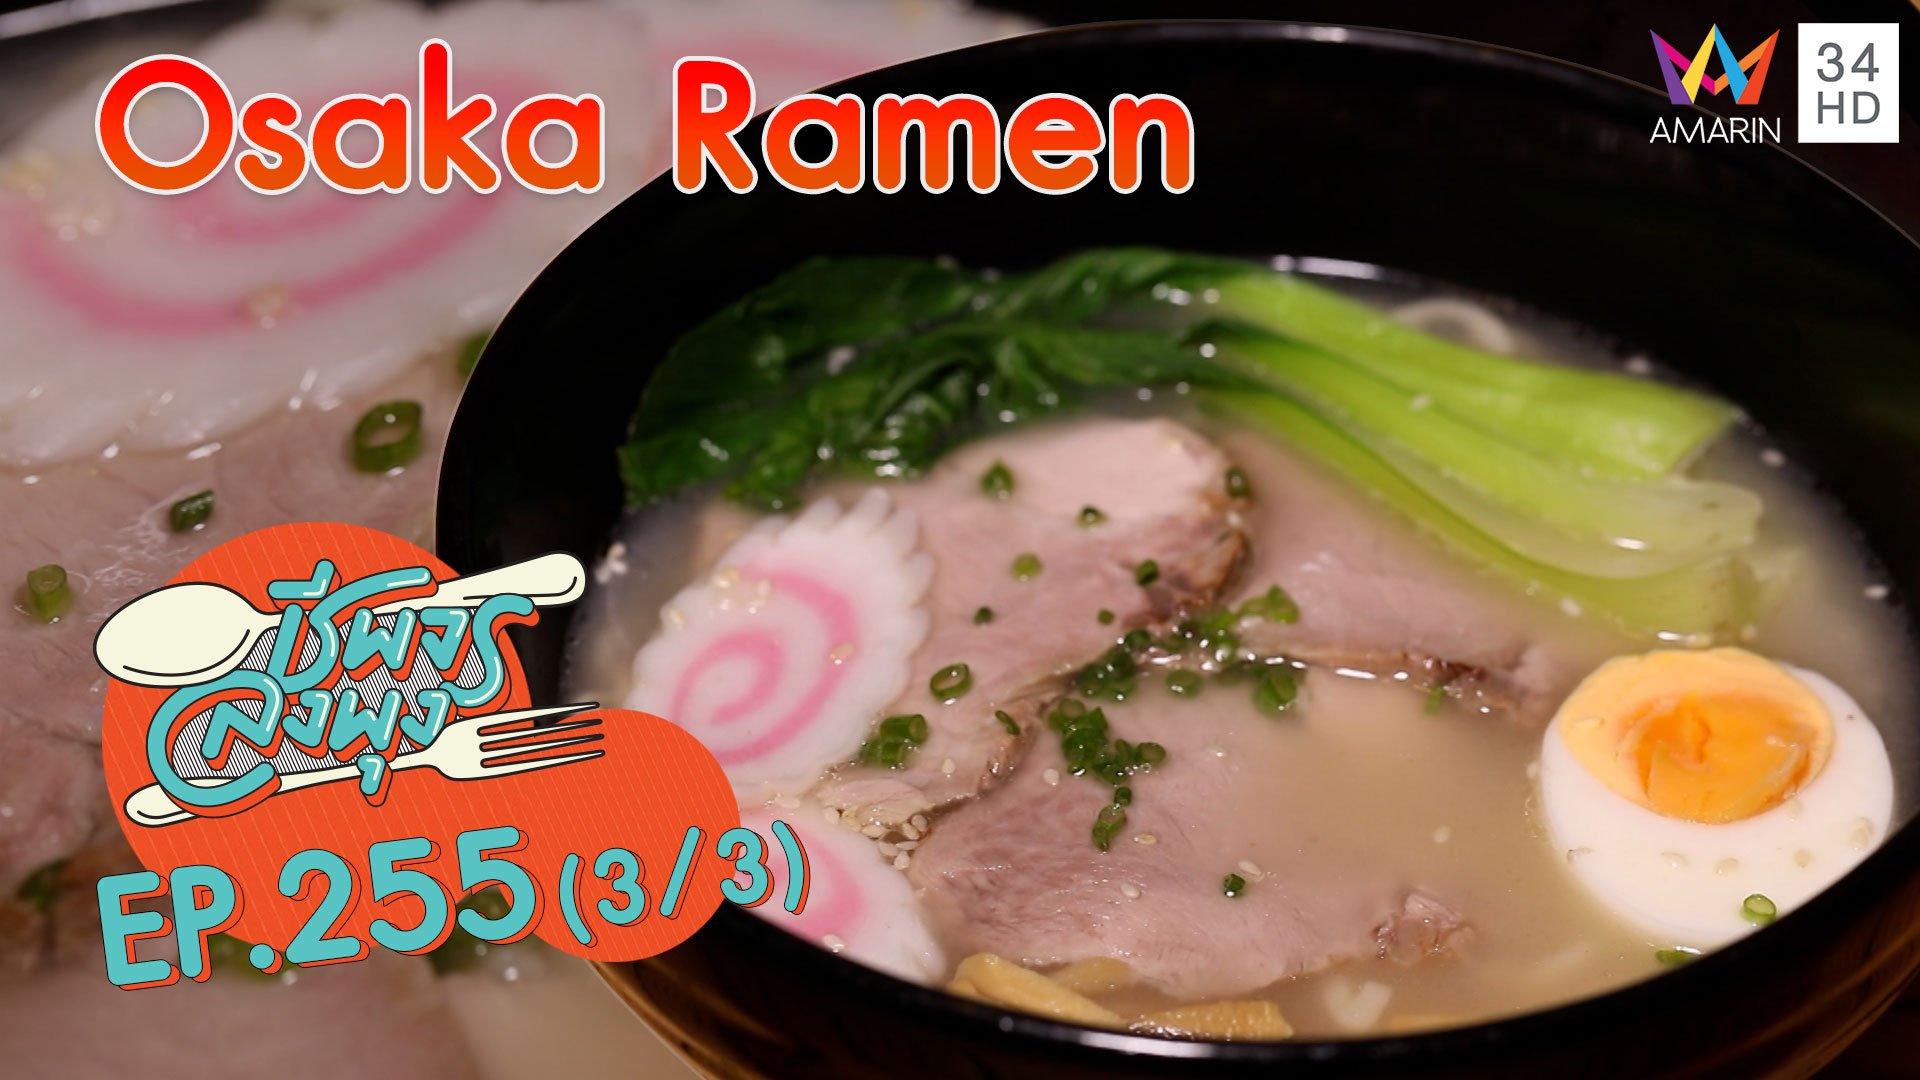 อาหารญี่ปุ่นรสชาติเยี่ยม @'ร้าน Osaka Ramen' | ชีพจรลงพุง | 15 พ.ย. 63 (3/3) | AMARIN TVHD34